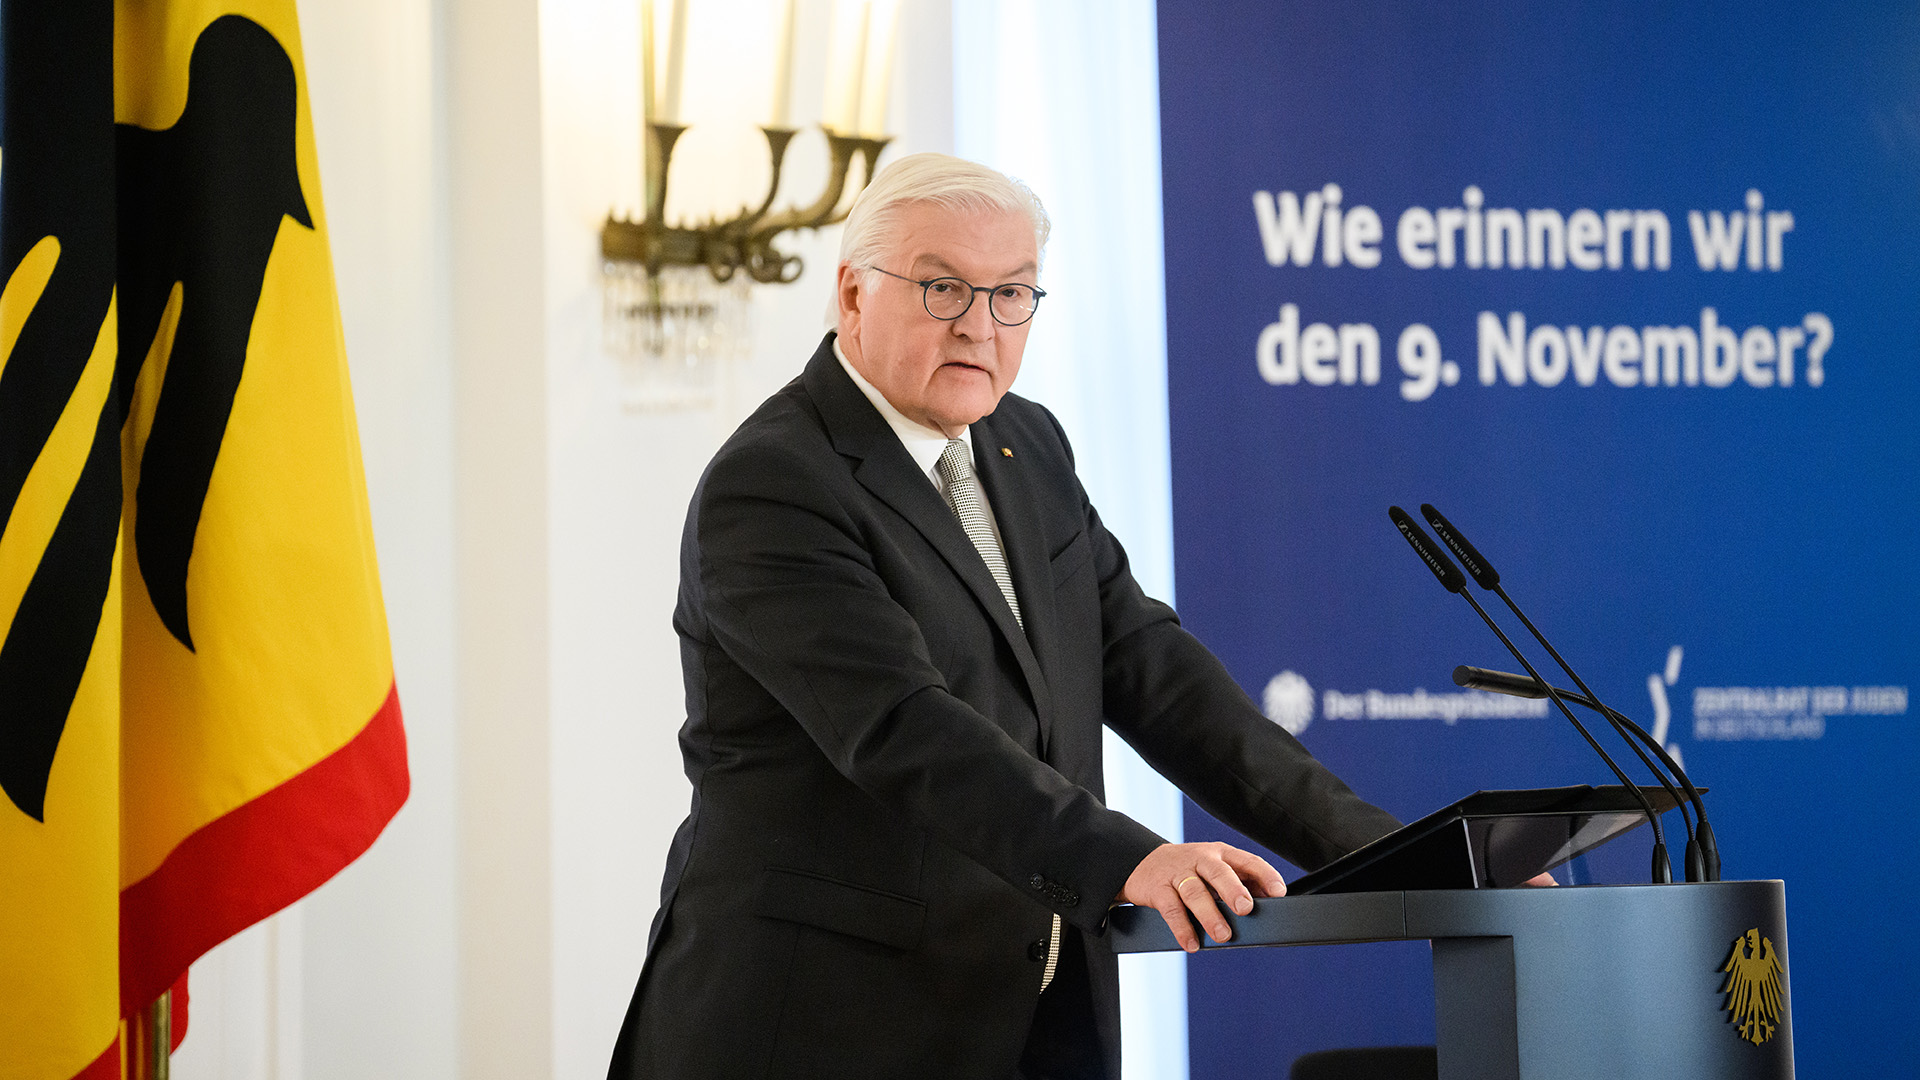 Bundespräsident Frank-Walter Steinmeier spricht zur Eröffnung der Tagung "Wie erinnern wir den 9. November?" . | picture alliance/dpa